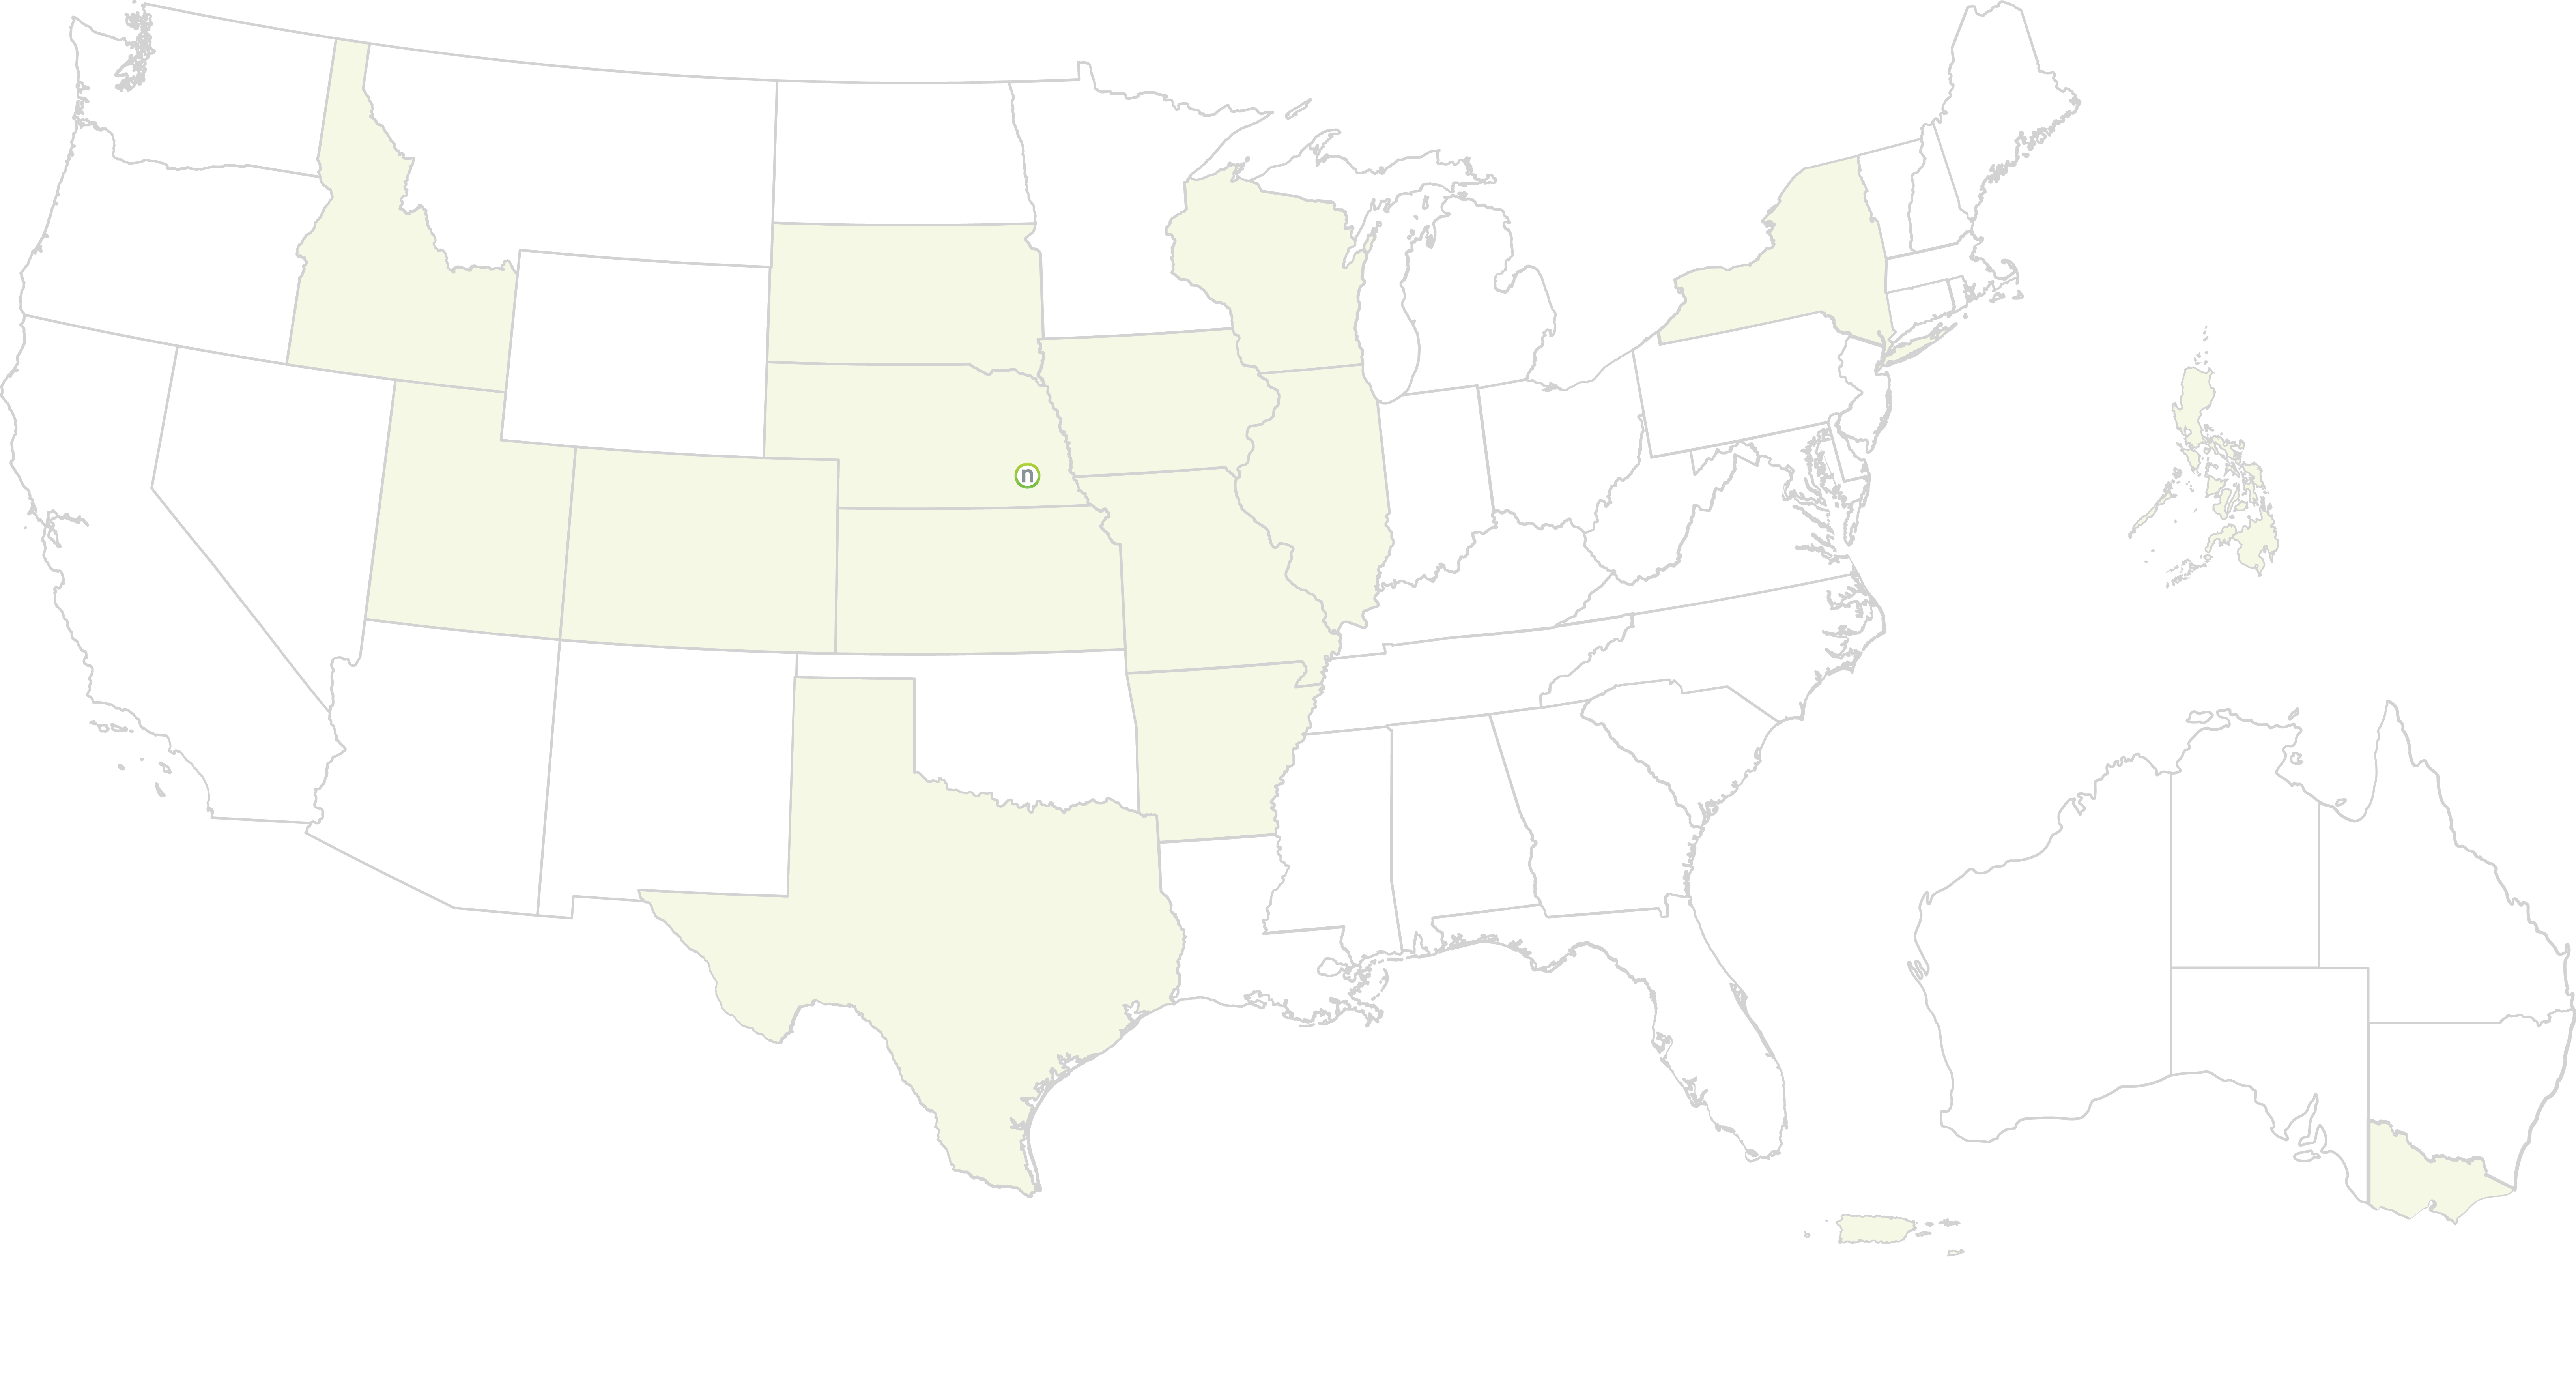 States with Nelnet Offices: ID, UT, CO, TX, NE - Headquarters Lincoln, SD, WI, NY, MA, RI, MO, and Victoria, Australia